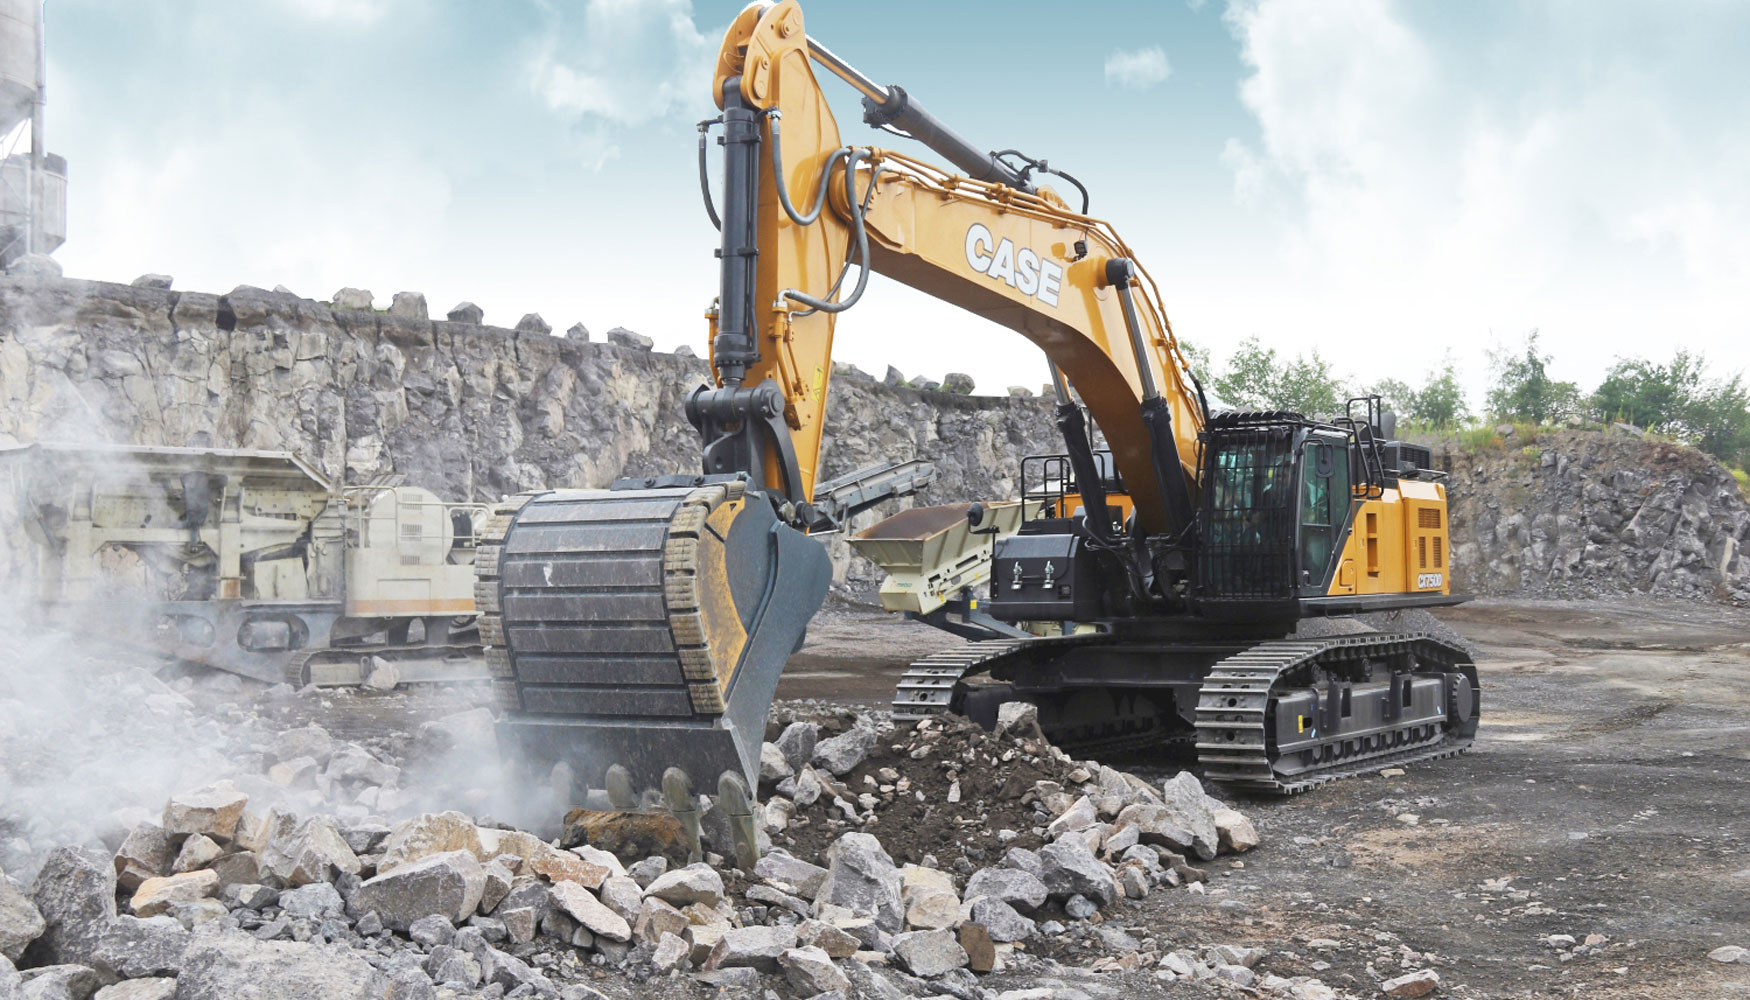 Nueva CX750D, la mquina ms grande y potente en la gama de excavadoras de Case